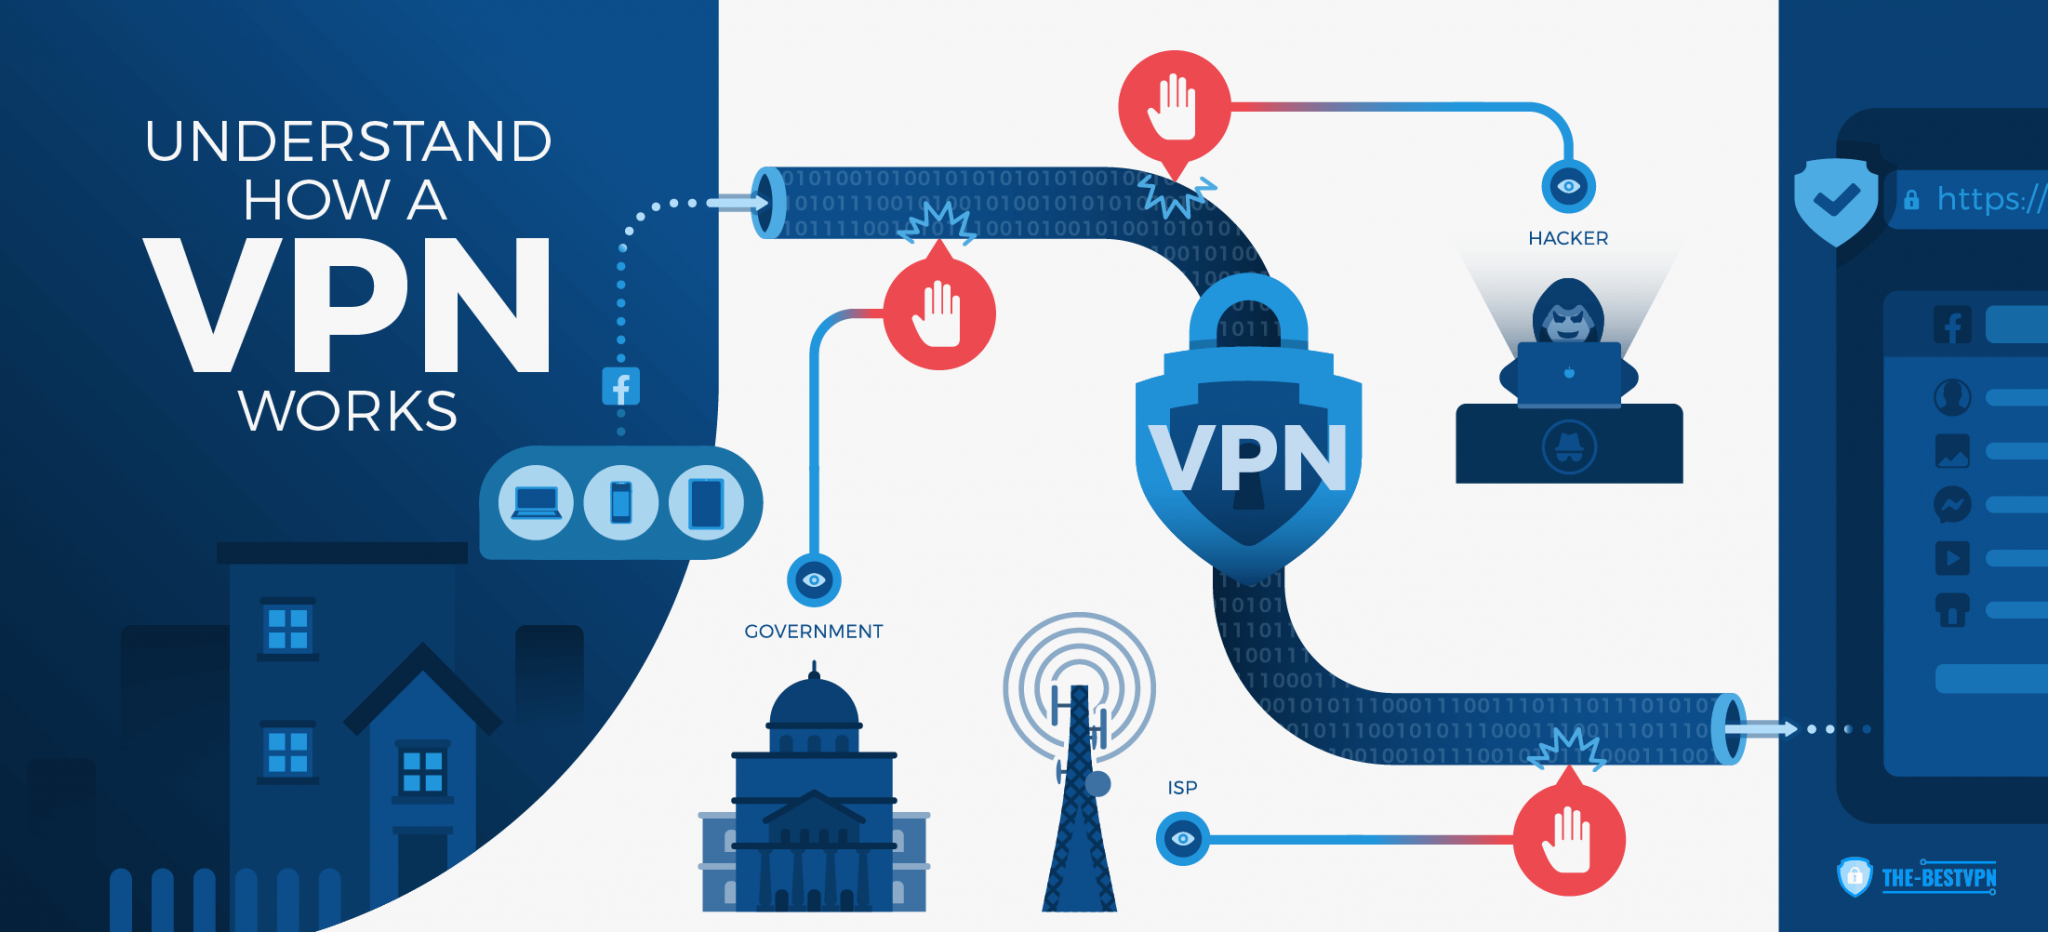 https://the-bestvpn.com/wp-content/uploads/2019/12/Understand-how-VPN-works-Infographic-2048x932.png